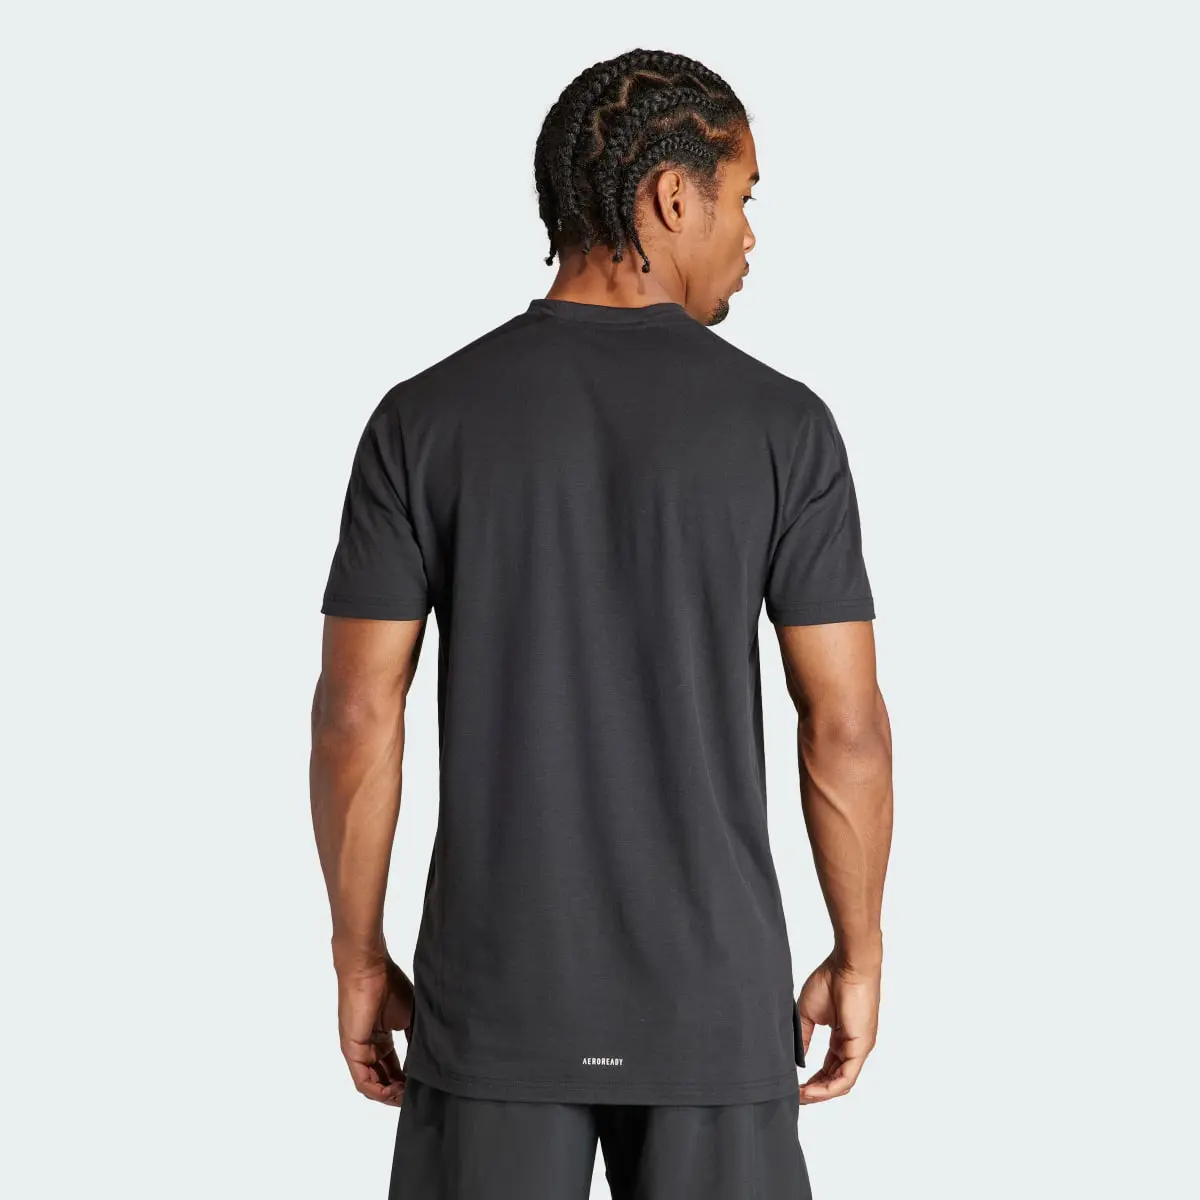 Adidas T-shirt d'entraînement Designed for Training. 3